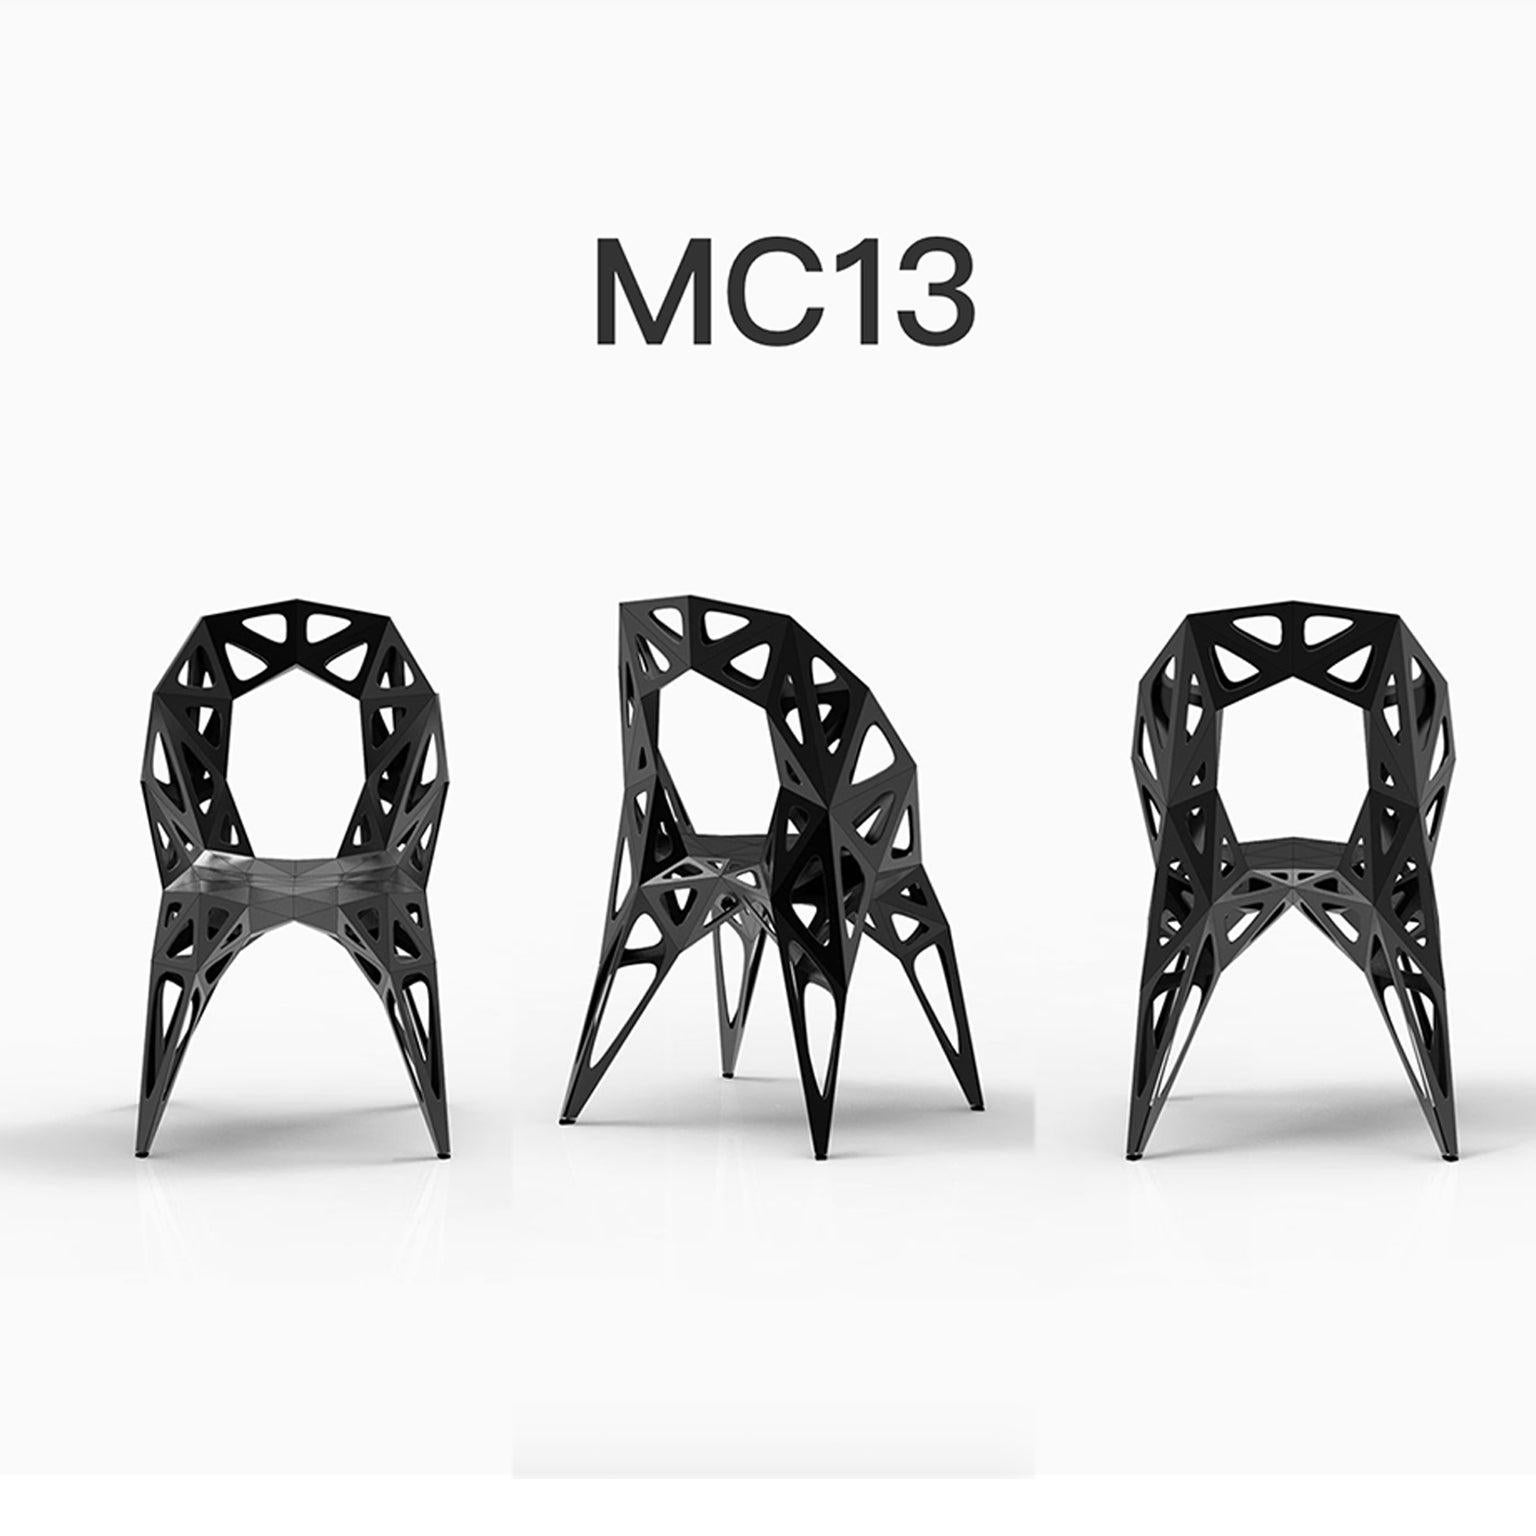 Extérieur et intérieur
3 types de chaises officielles / disponibles
Solide
Points
Cadre
2 couleurs officielles / disponibles / finition en poli/mat
Noir
Argent

Le designer de meubles Zhoujie Zhang est connu pour l'intégration de la